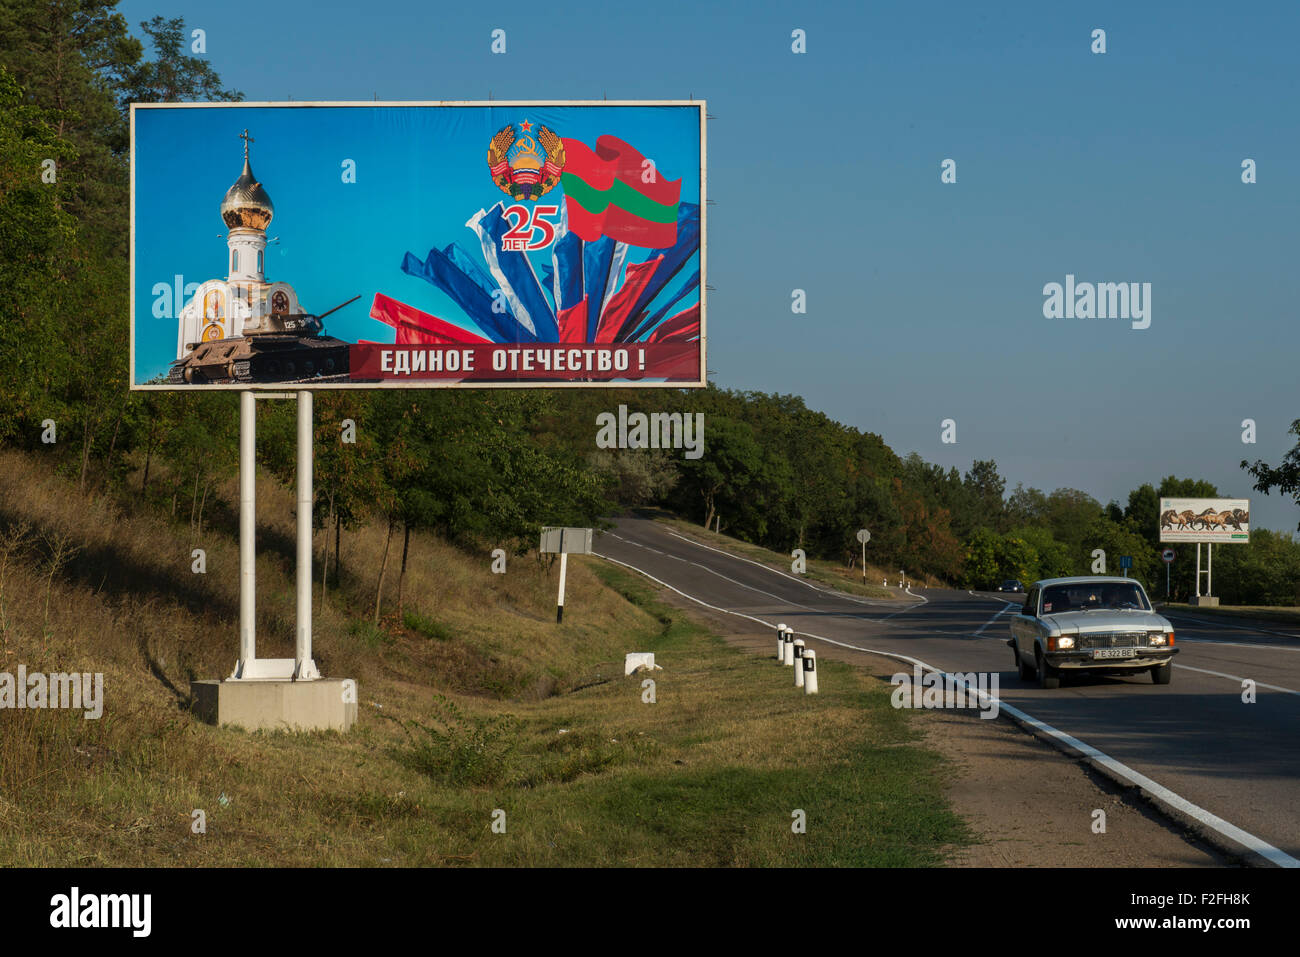 Roadside Poster - 25th Anniversary of the Pridnestrovian Moldavian Republic PMR, Transnistria, Soviet USSR Moldova Stock Photo